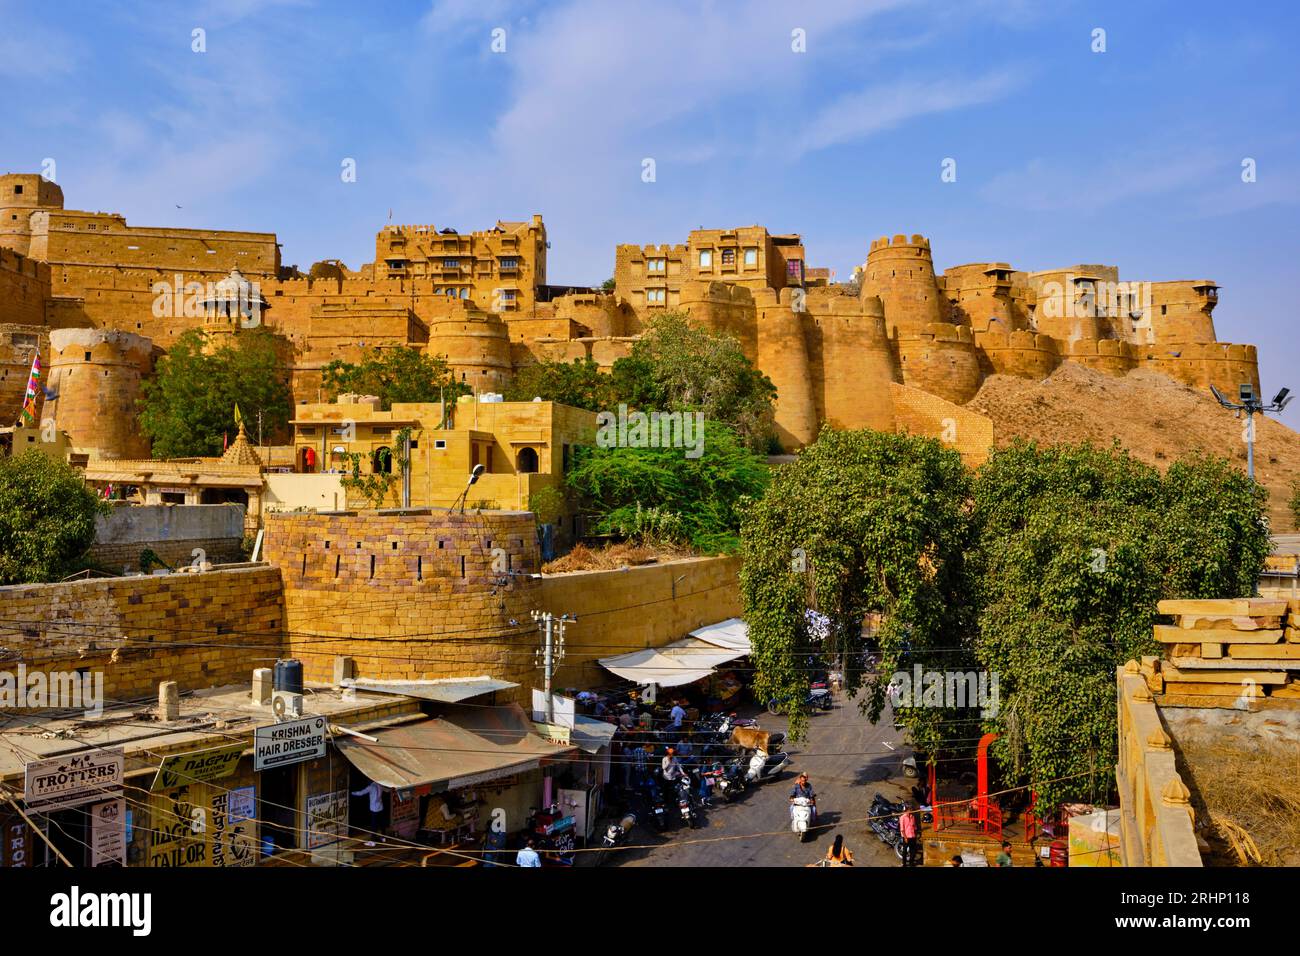 Indien, Rajasthan Staat, Rajasthan Hügel als UNESCO-Weltkulturerbe eingestuft, Jaisalmer, die Festung Stockfoto